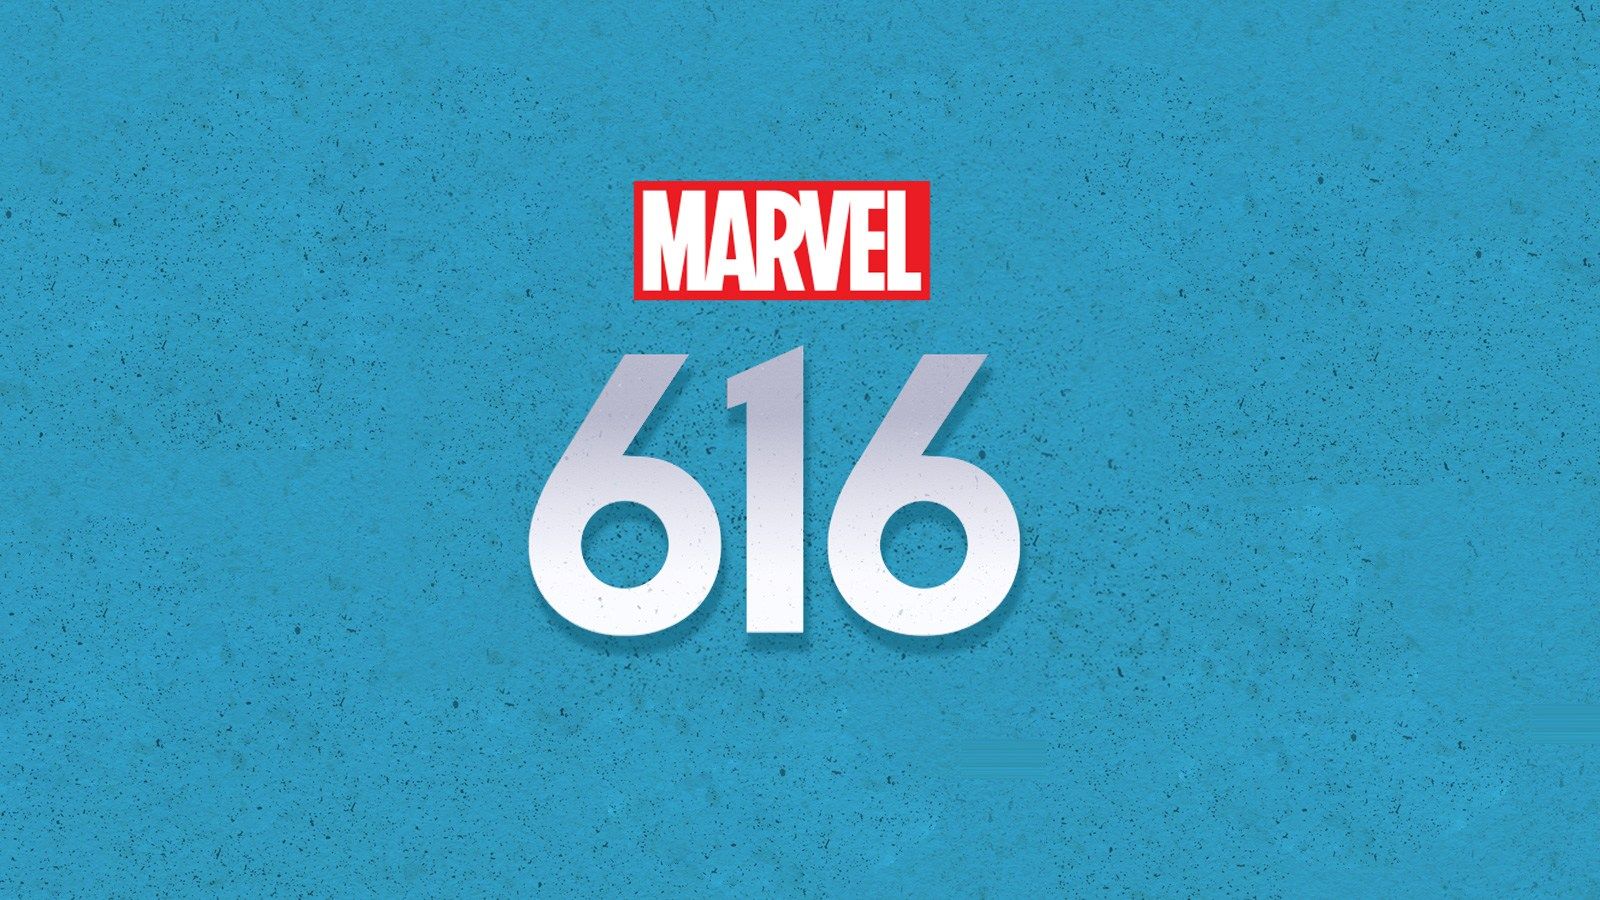 WATCH: Sneak peek videos released for MARVEL'S 616 #DisneyPlus